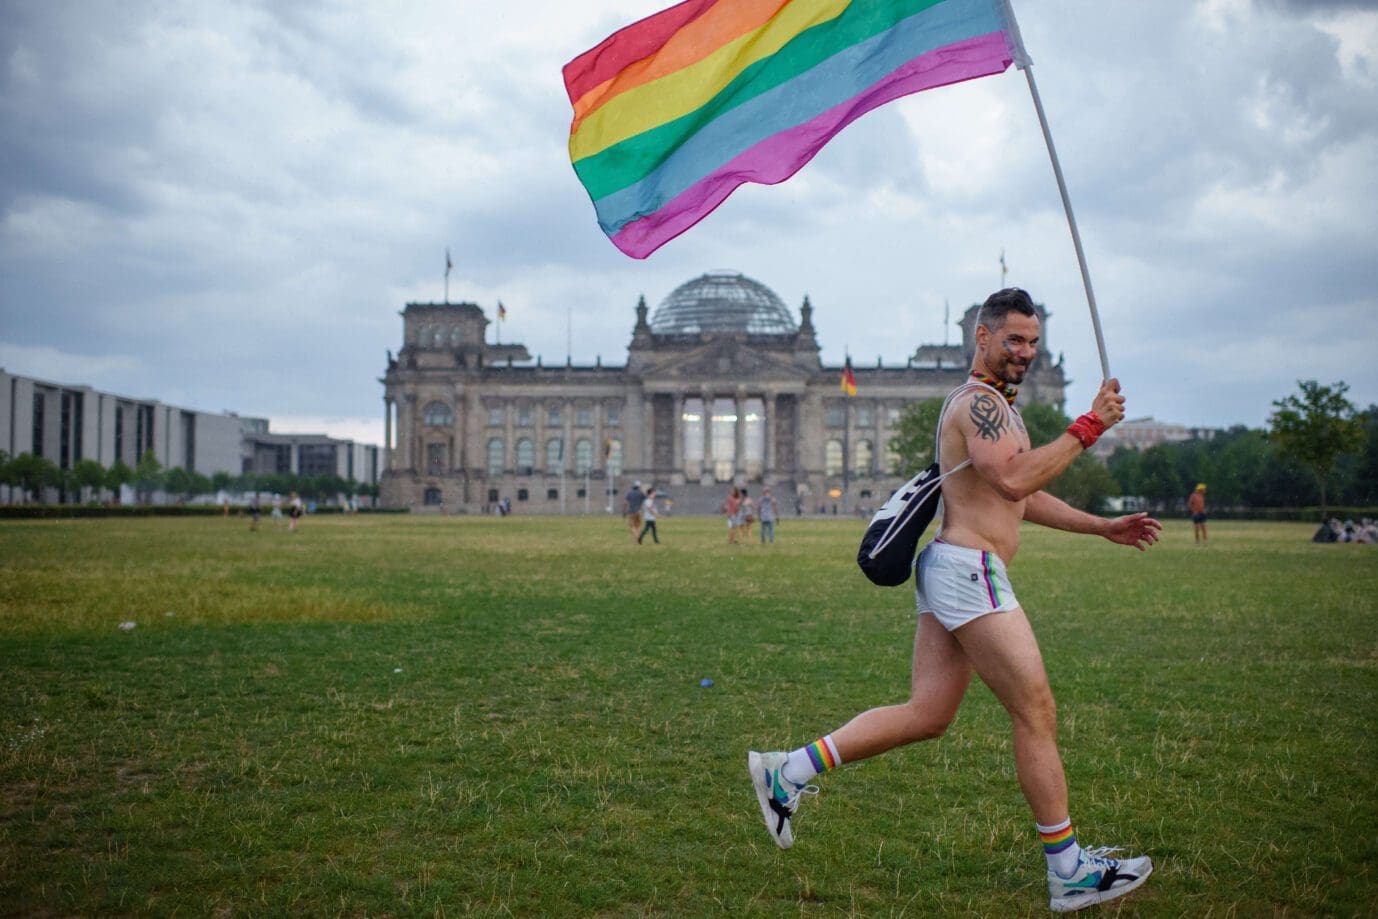 tag-des-grundgesetzes:-queere-initiative-will-groesste-regenbogenflagge-deutschlands-vor-reichstag-aufspannen